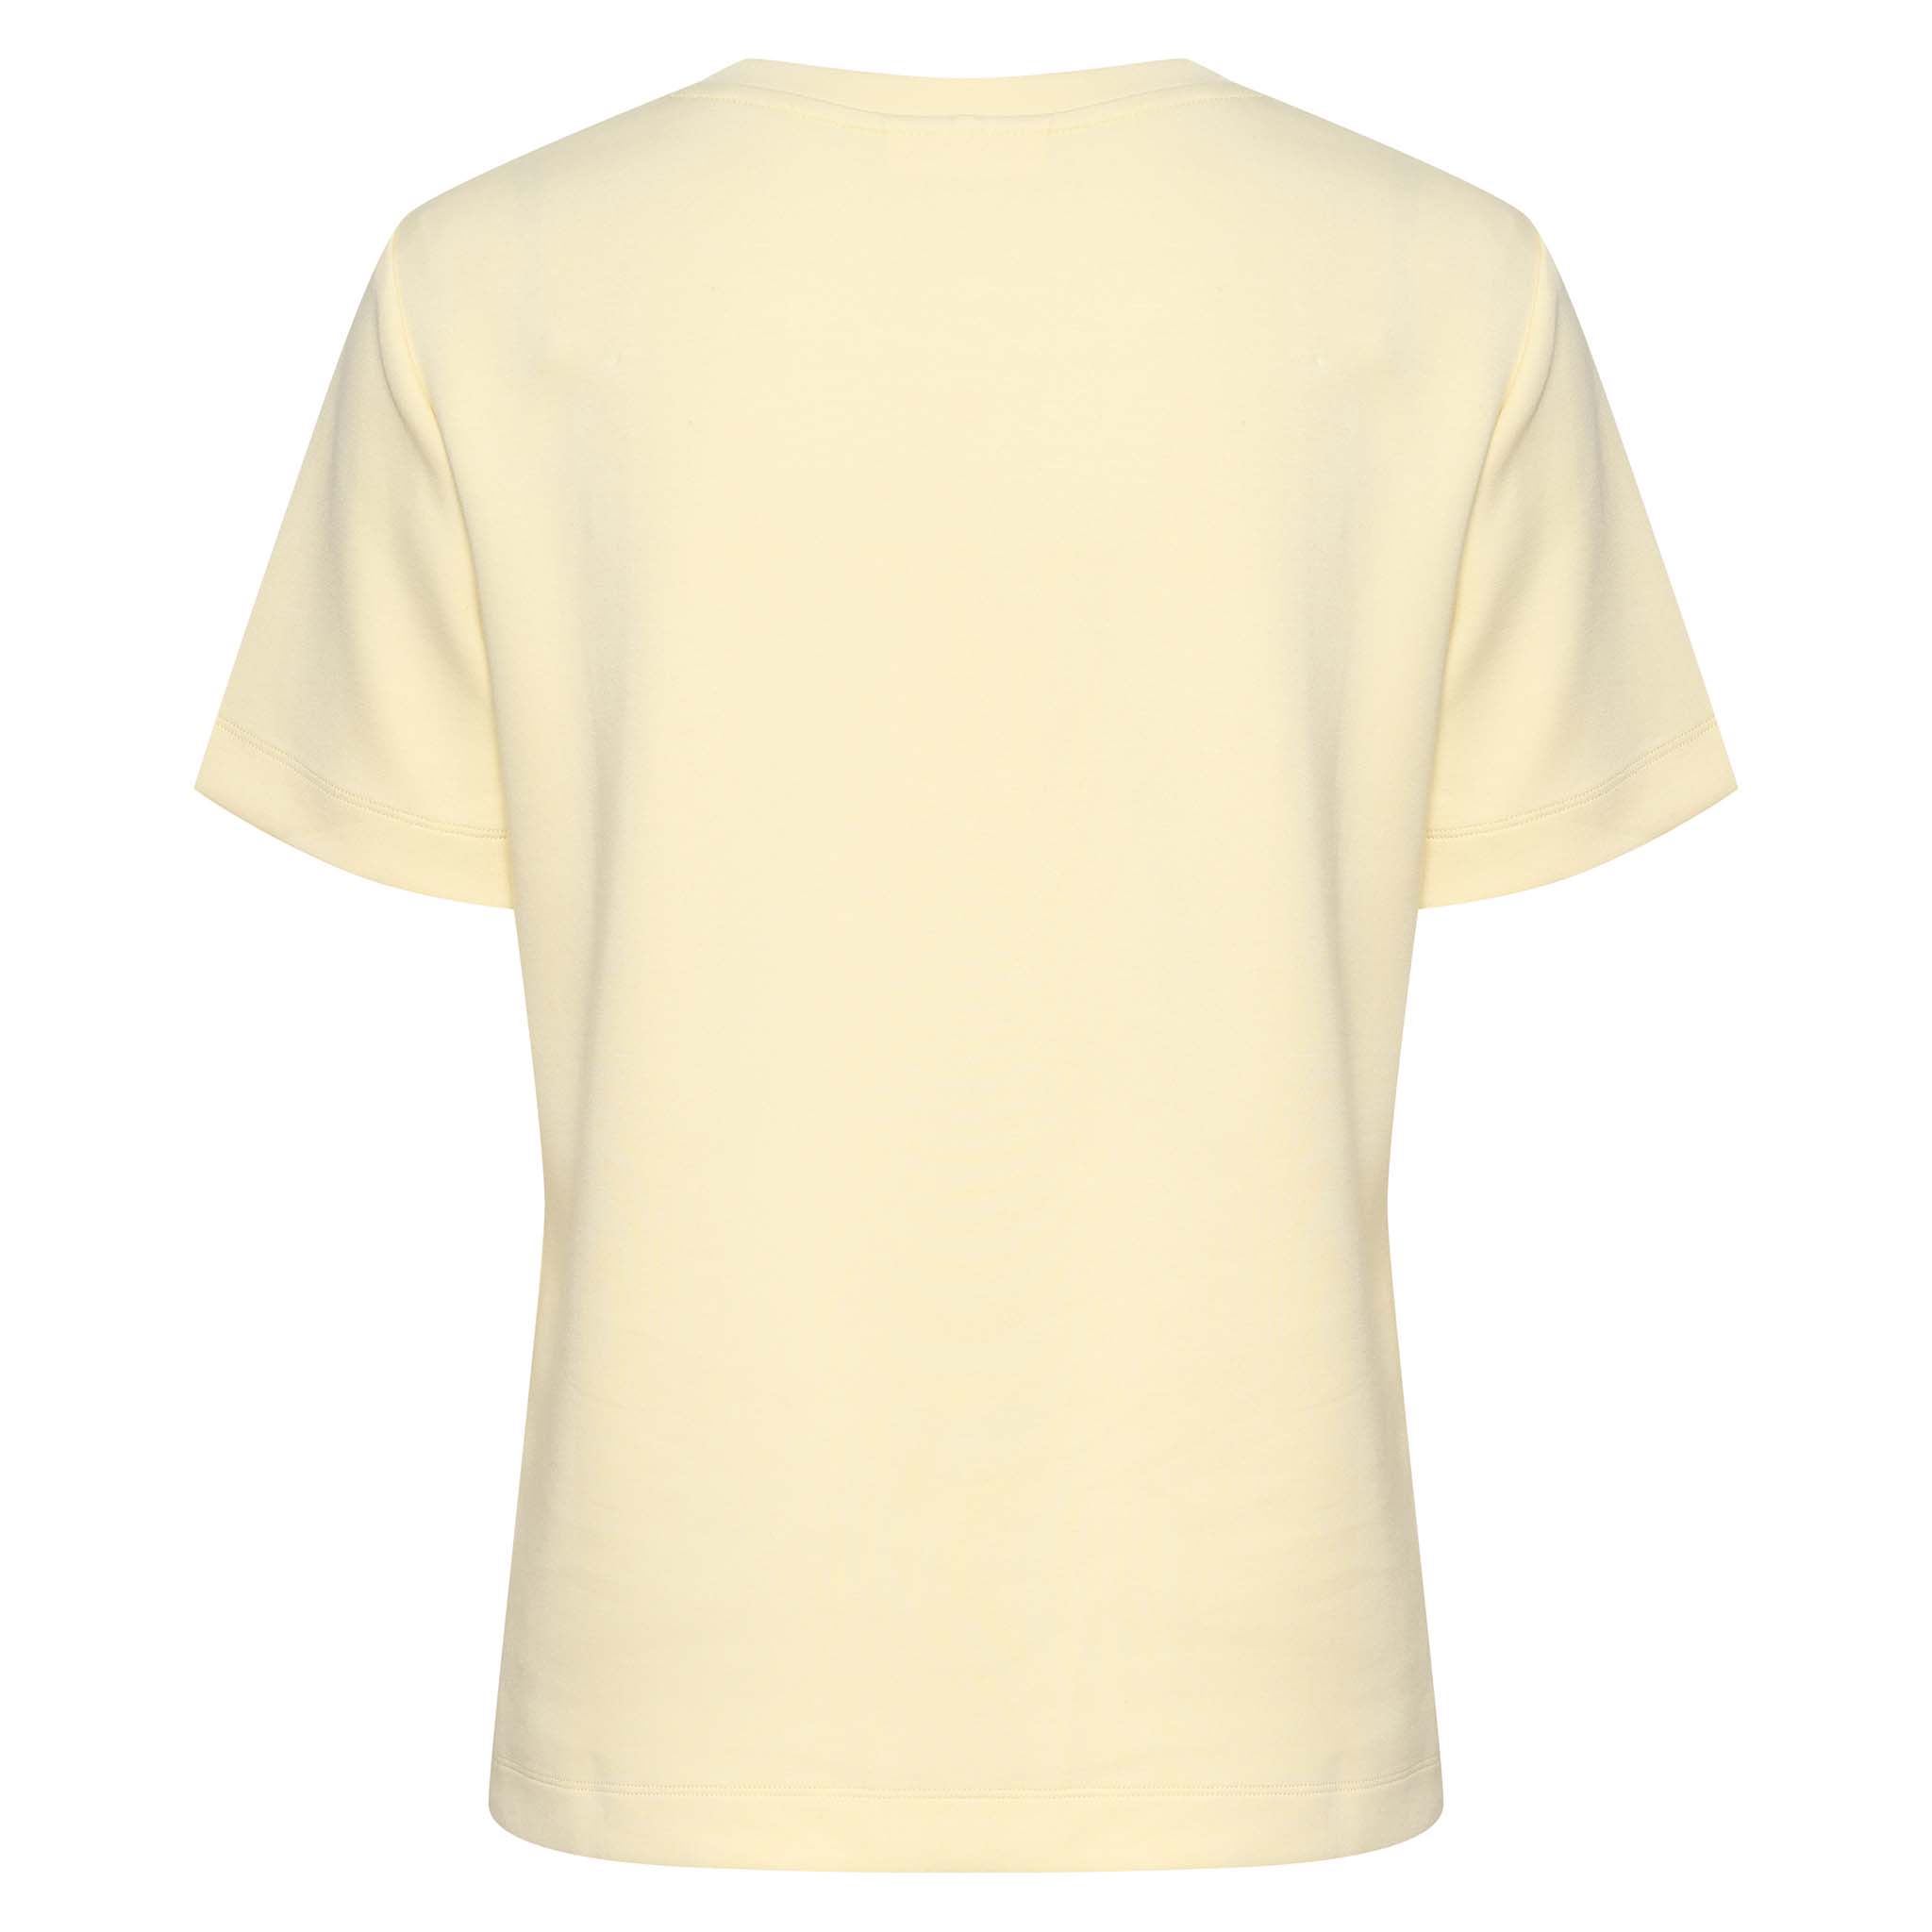 In Wear, vaaleankeltainen, siistimpi t-paita. Takakuva.